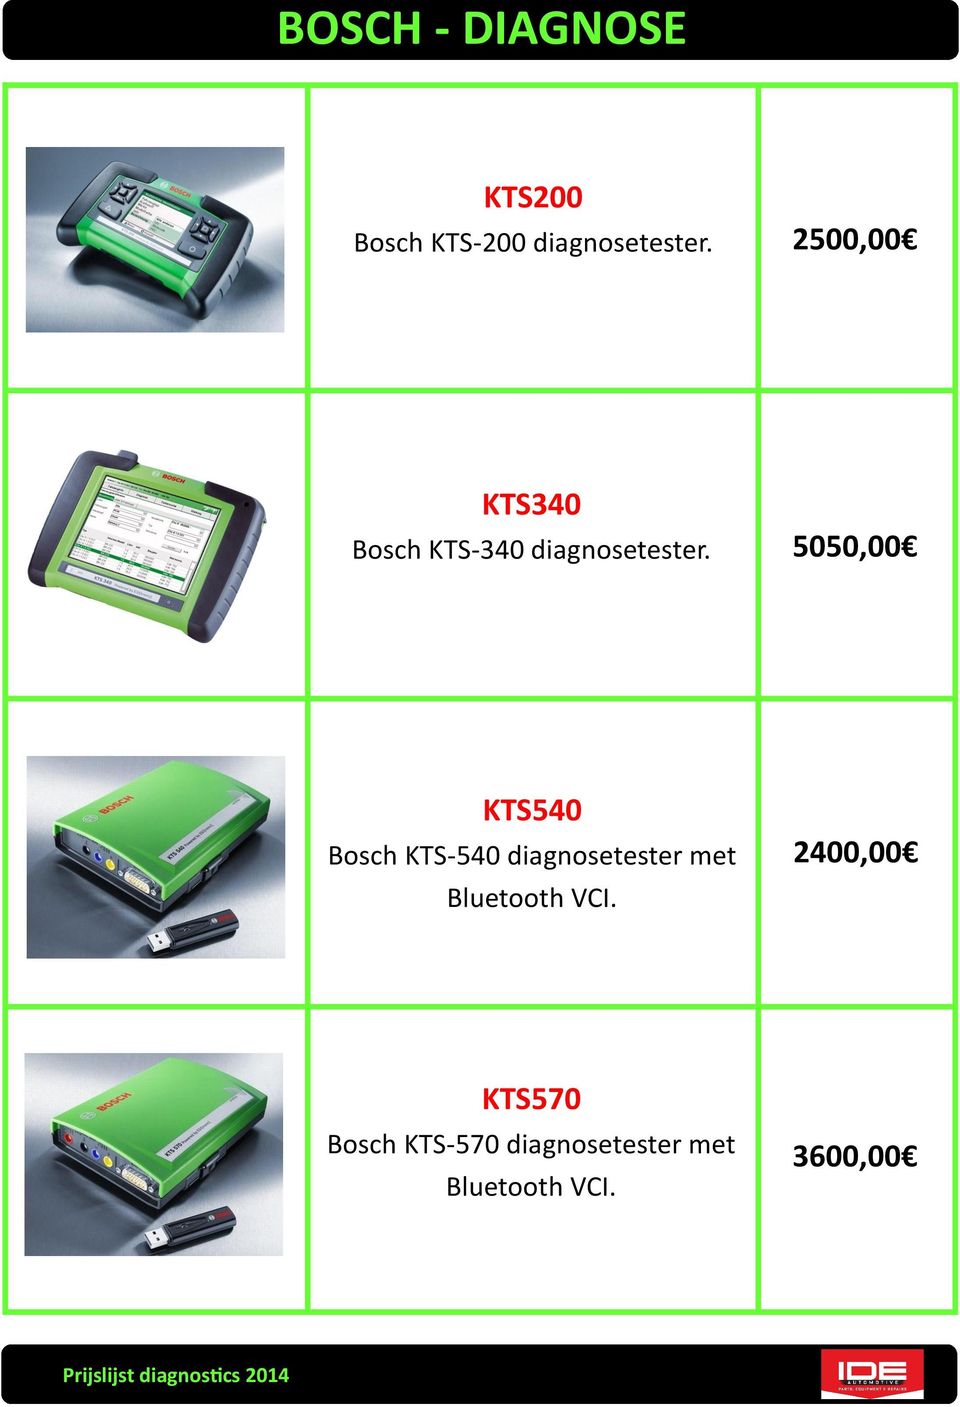 5050,00 KTS540 Bosch KTS-540 diagnosetester met Bluetooth